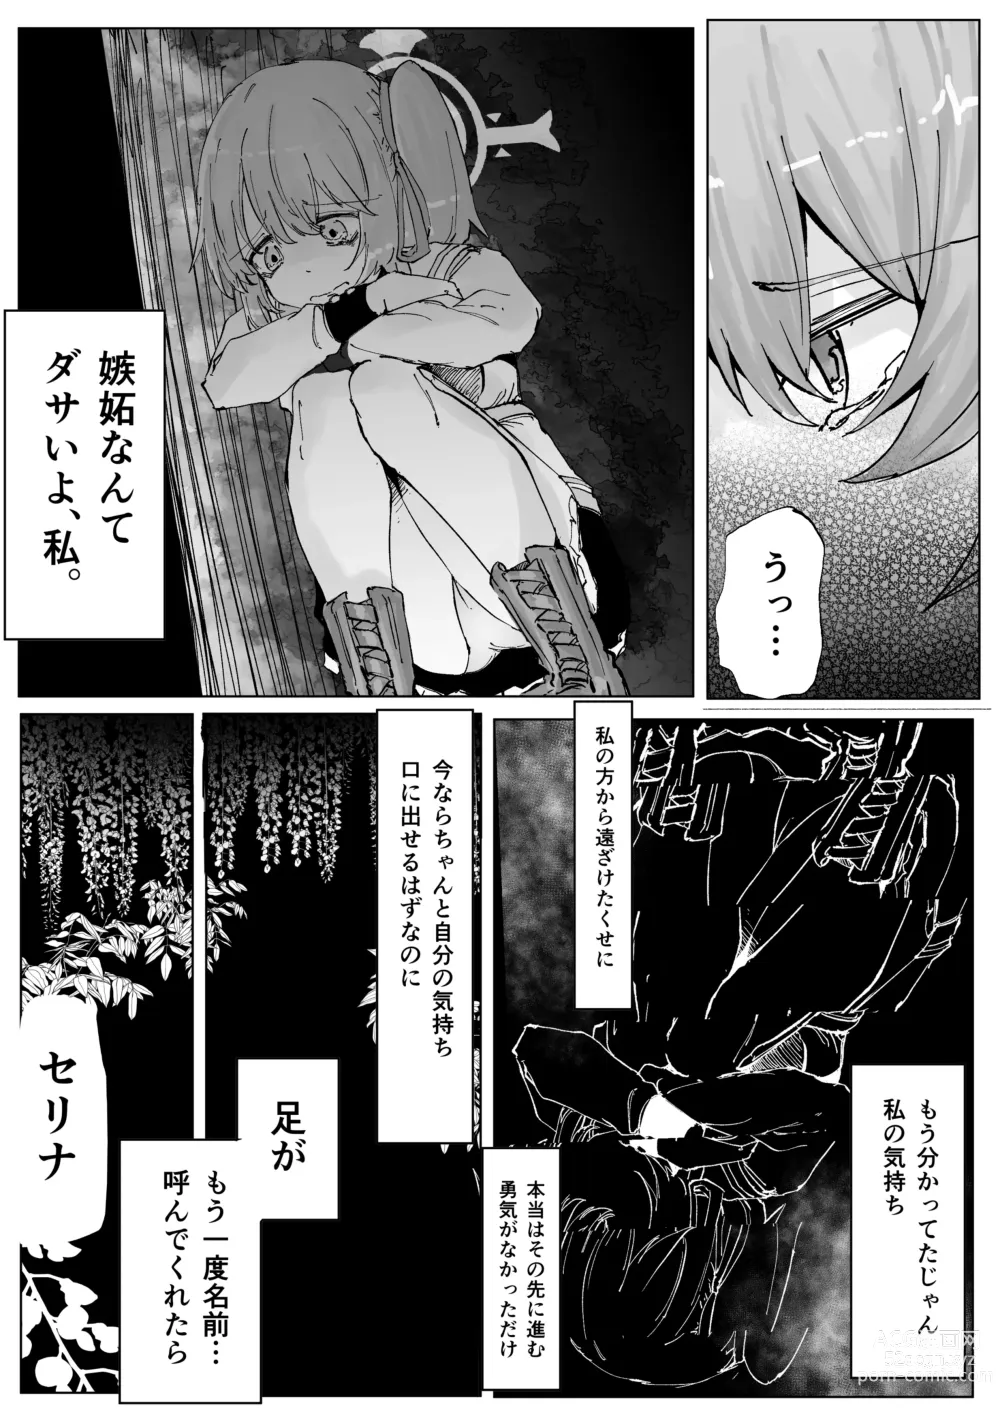 Page 36 of doujinshi Fujiyoi